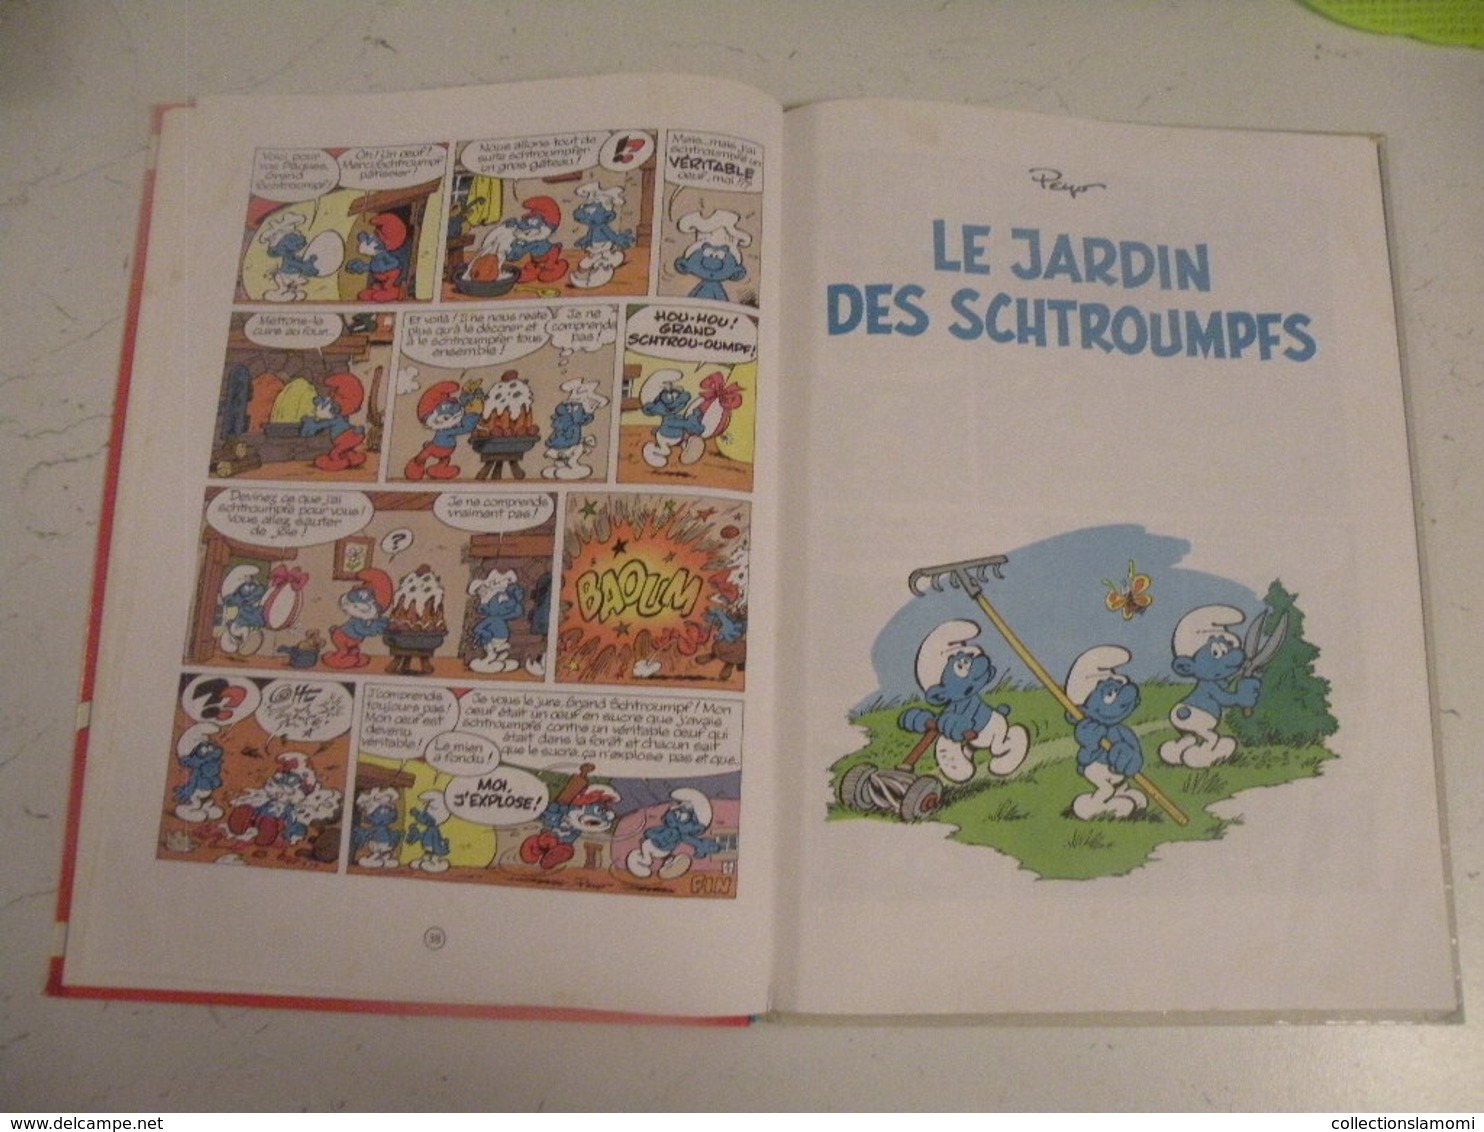 Les Schtroumpfs Olympiques - 3 histoires de Schtroumpfs par Peyo - 48 pages 1983.